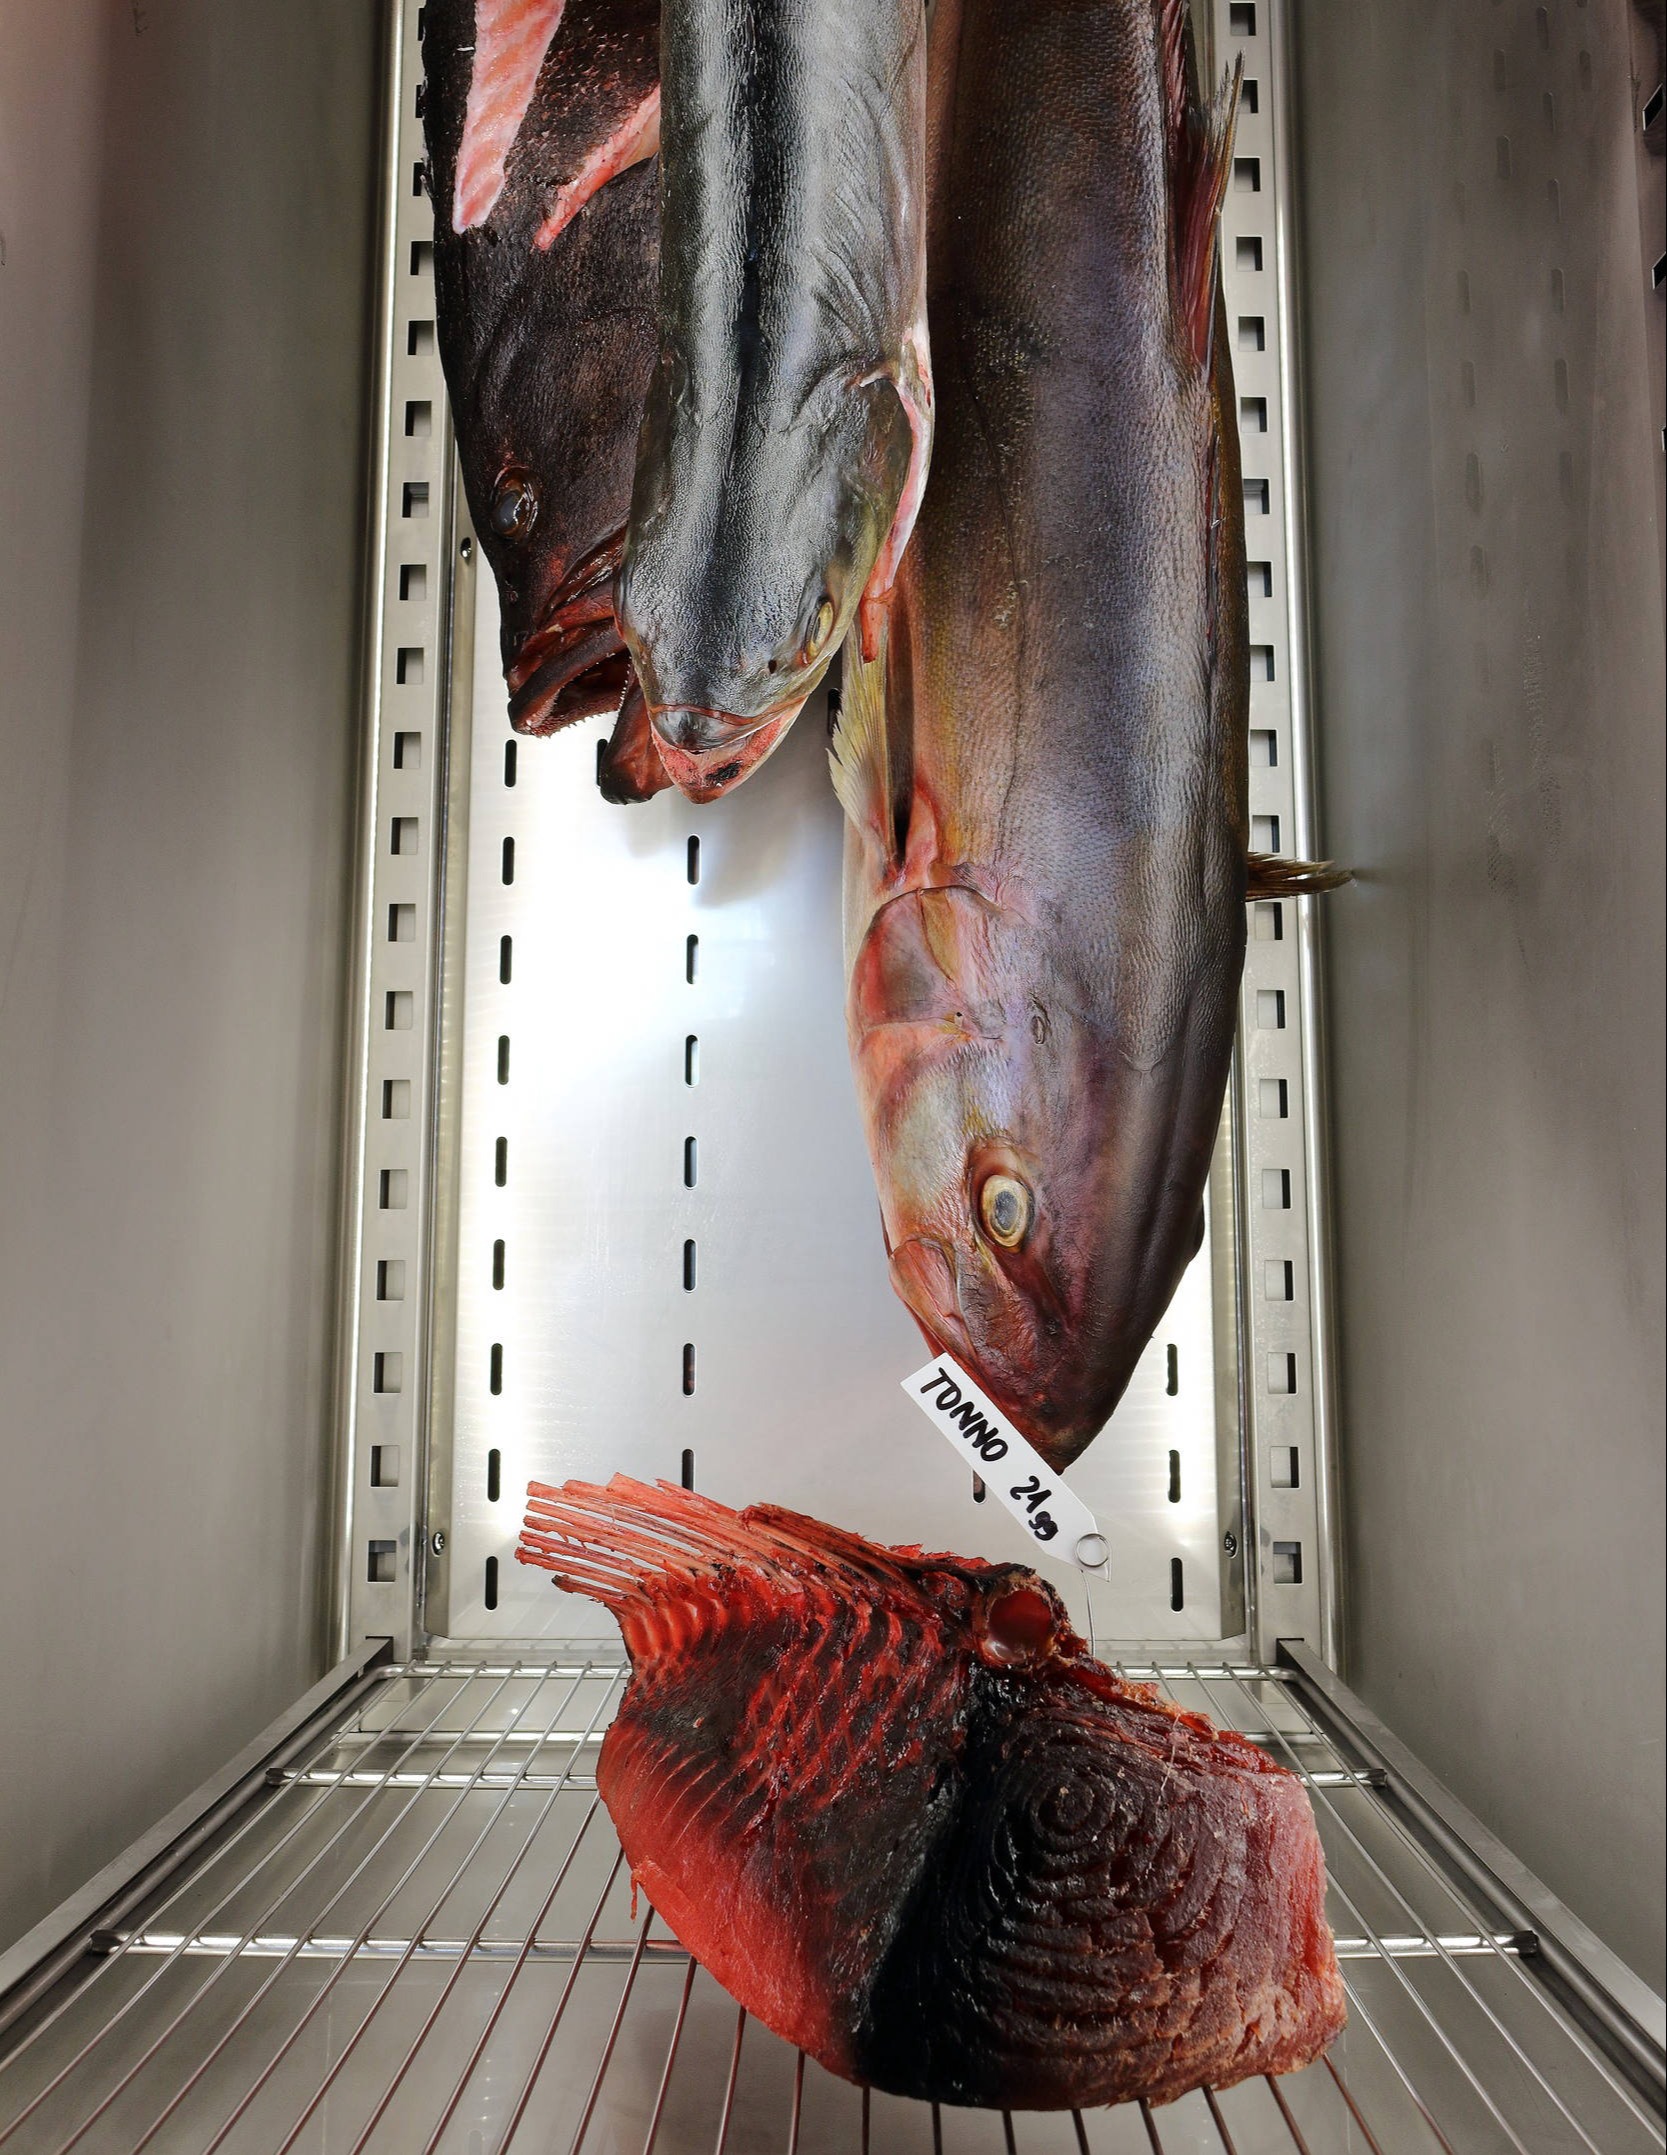 Pesce frollato all'interno dell'armadio meatico